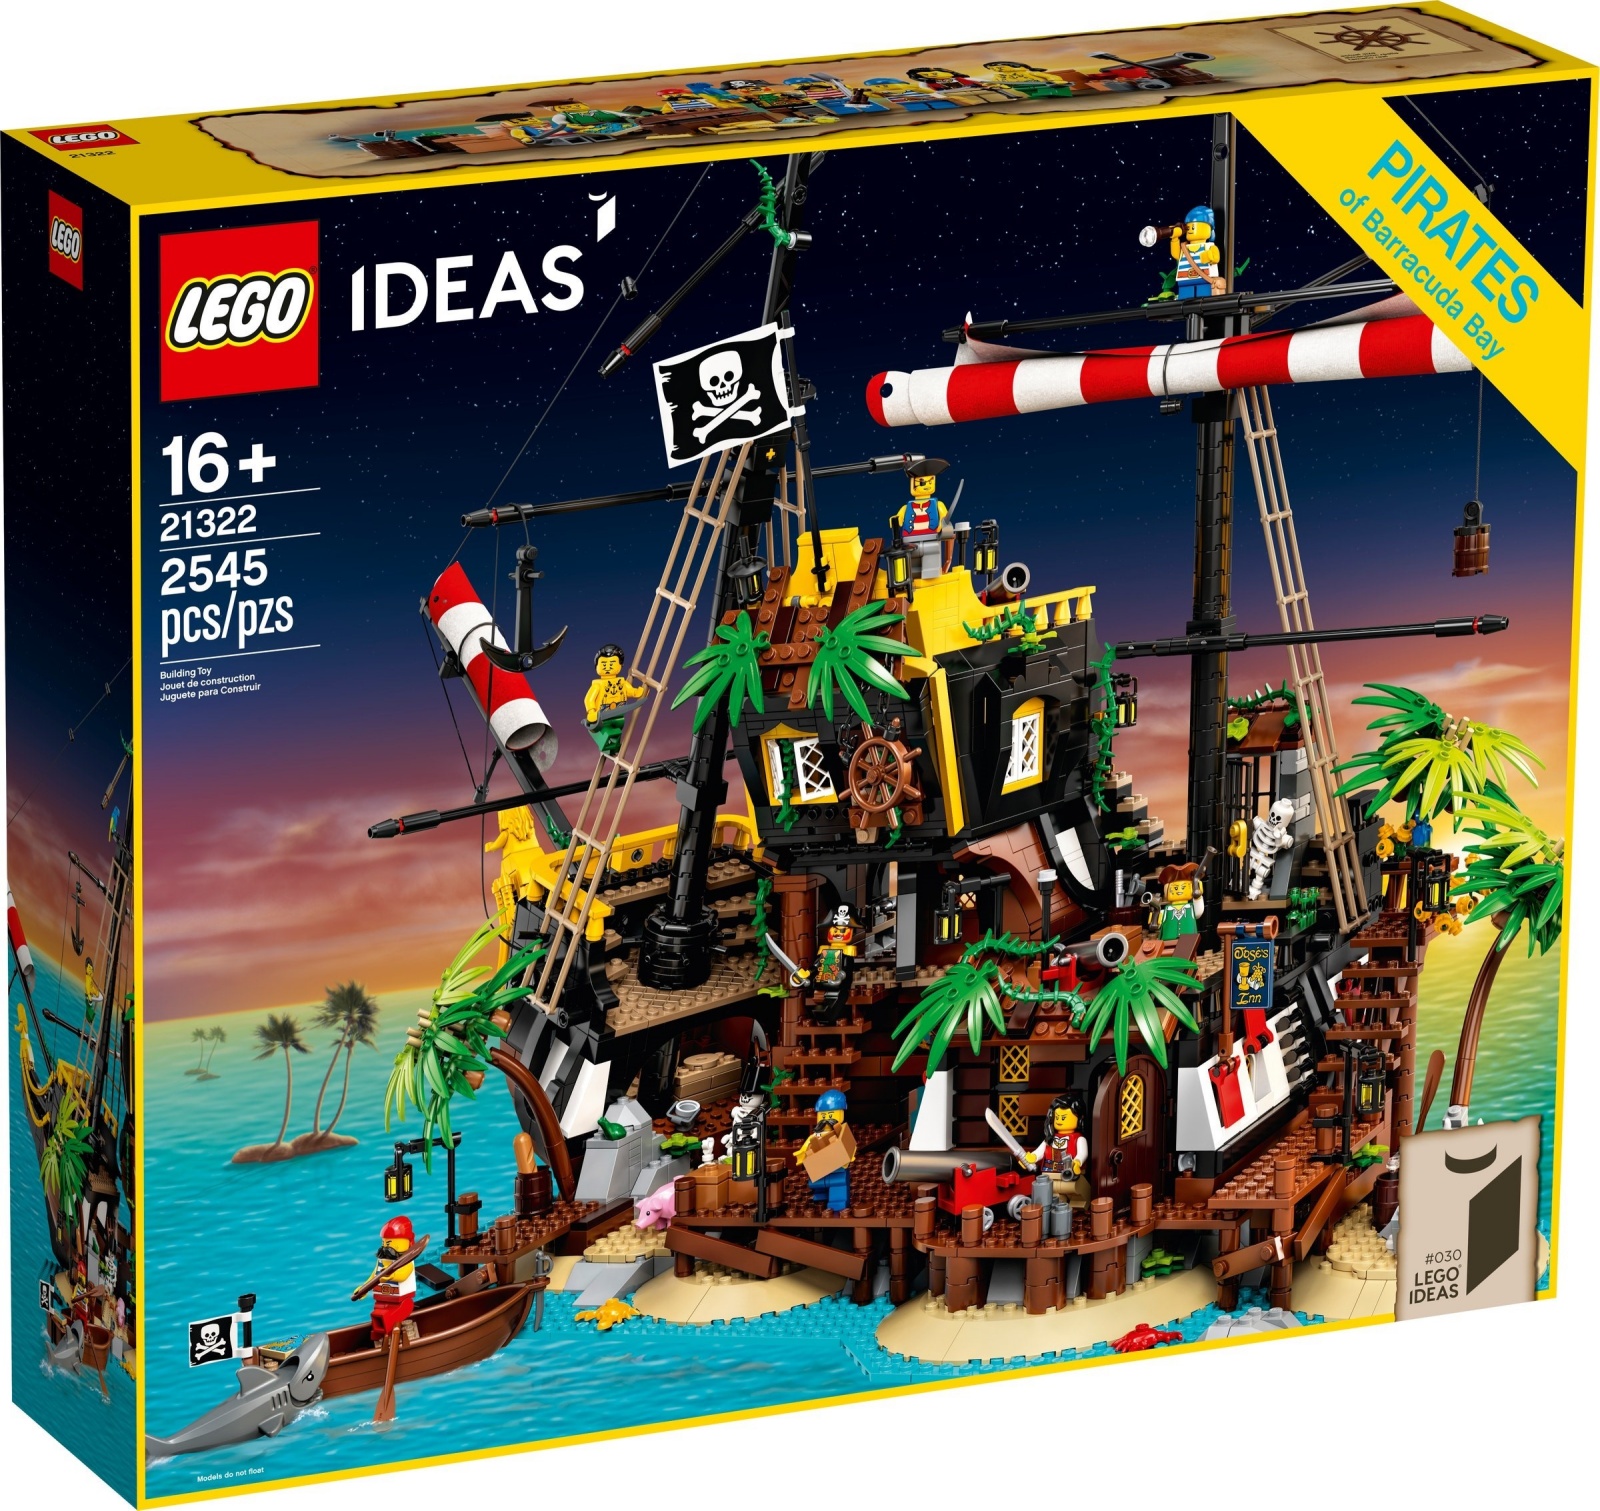 21322 LEGO Ideas Pirates of Barracuda Bay - Bộ đồ chơi LEGO Đảo Hải tặc